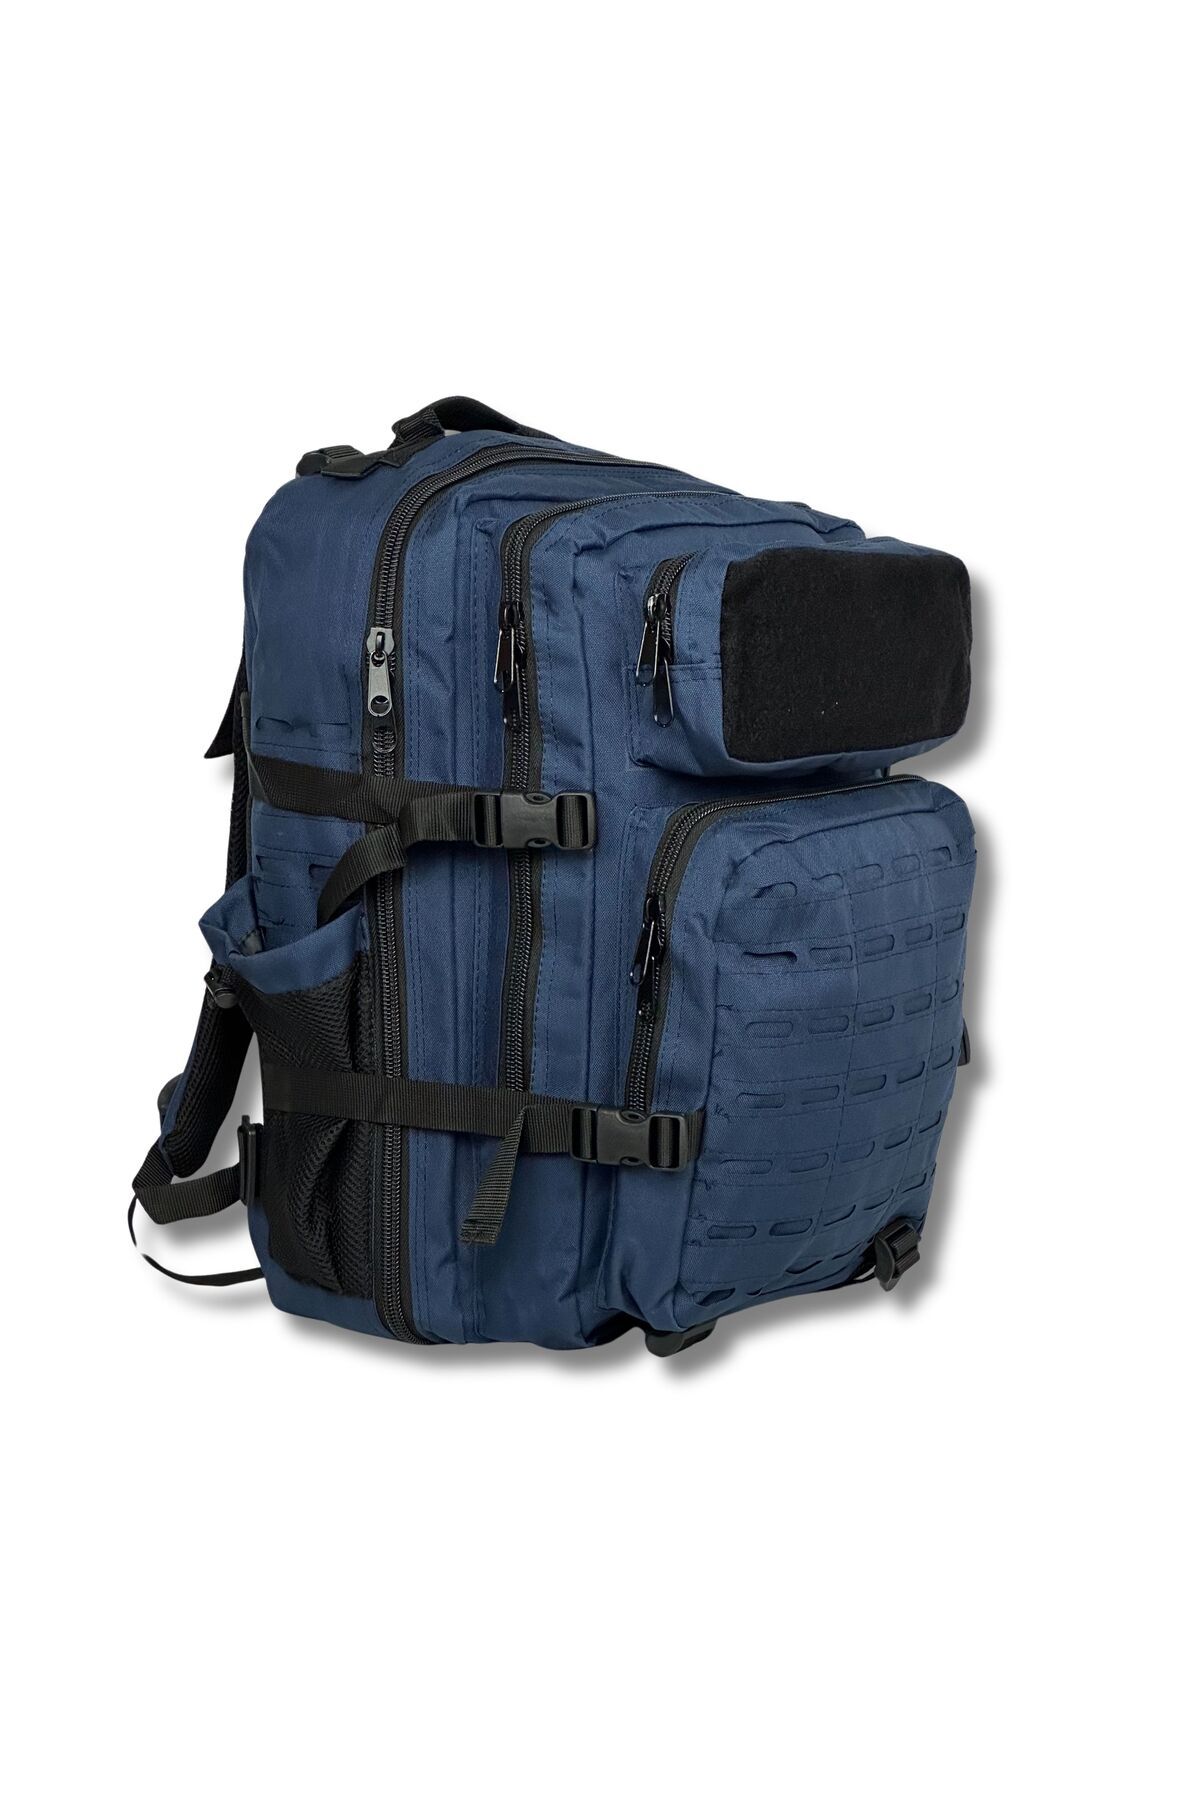 Wolftrap Tactical Taktik sırt çantası (çok amaçlı seyahat çantası)